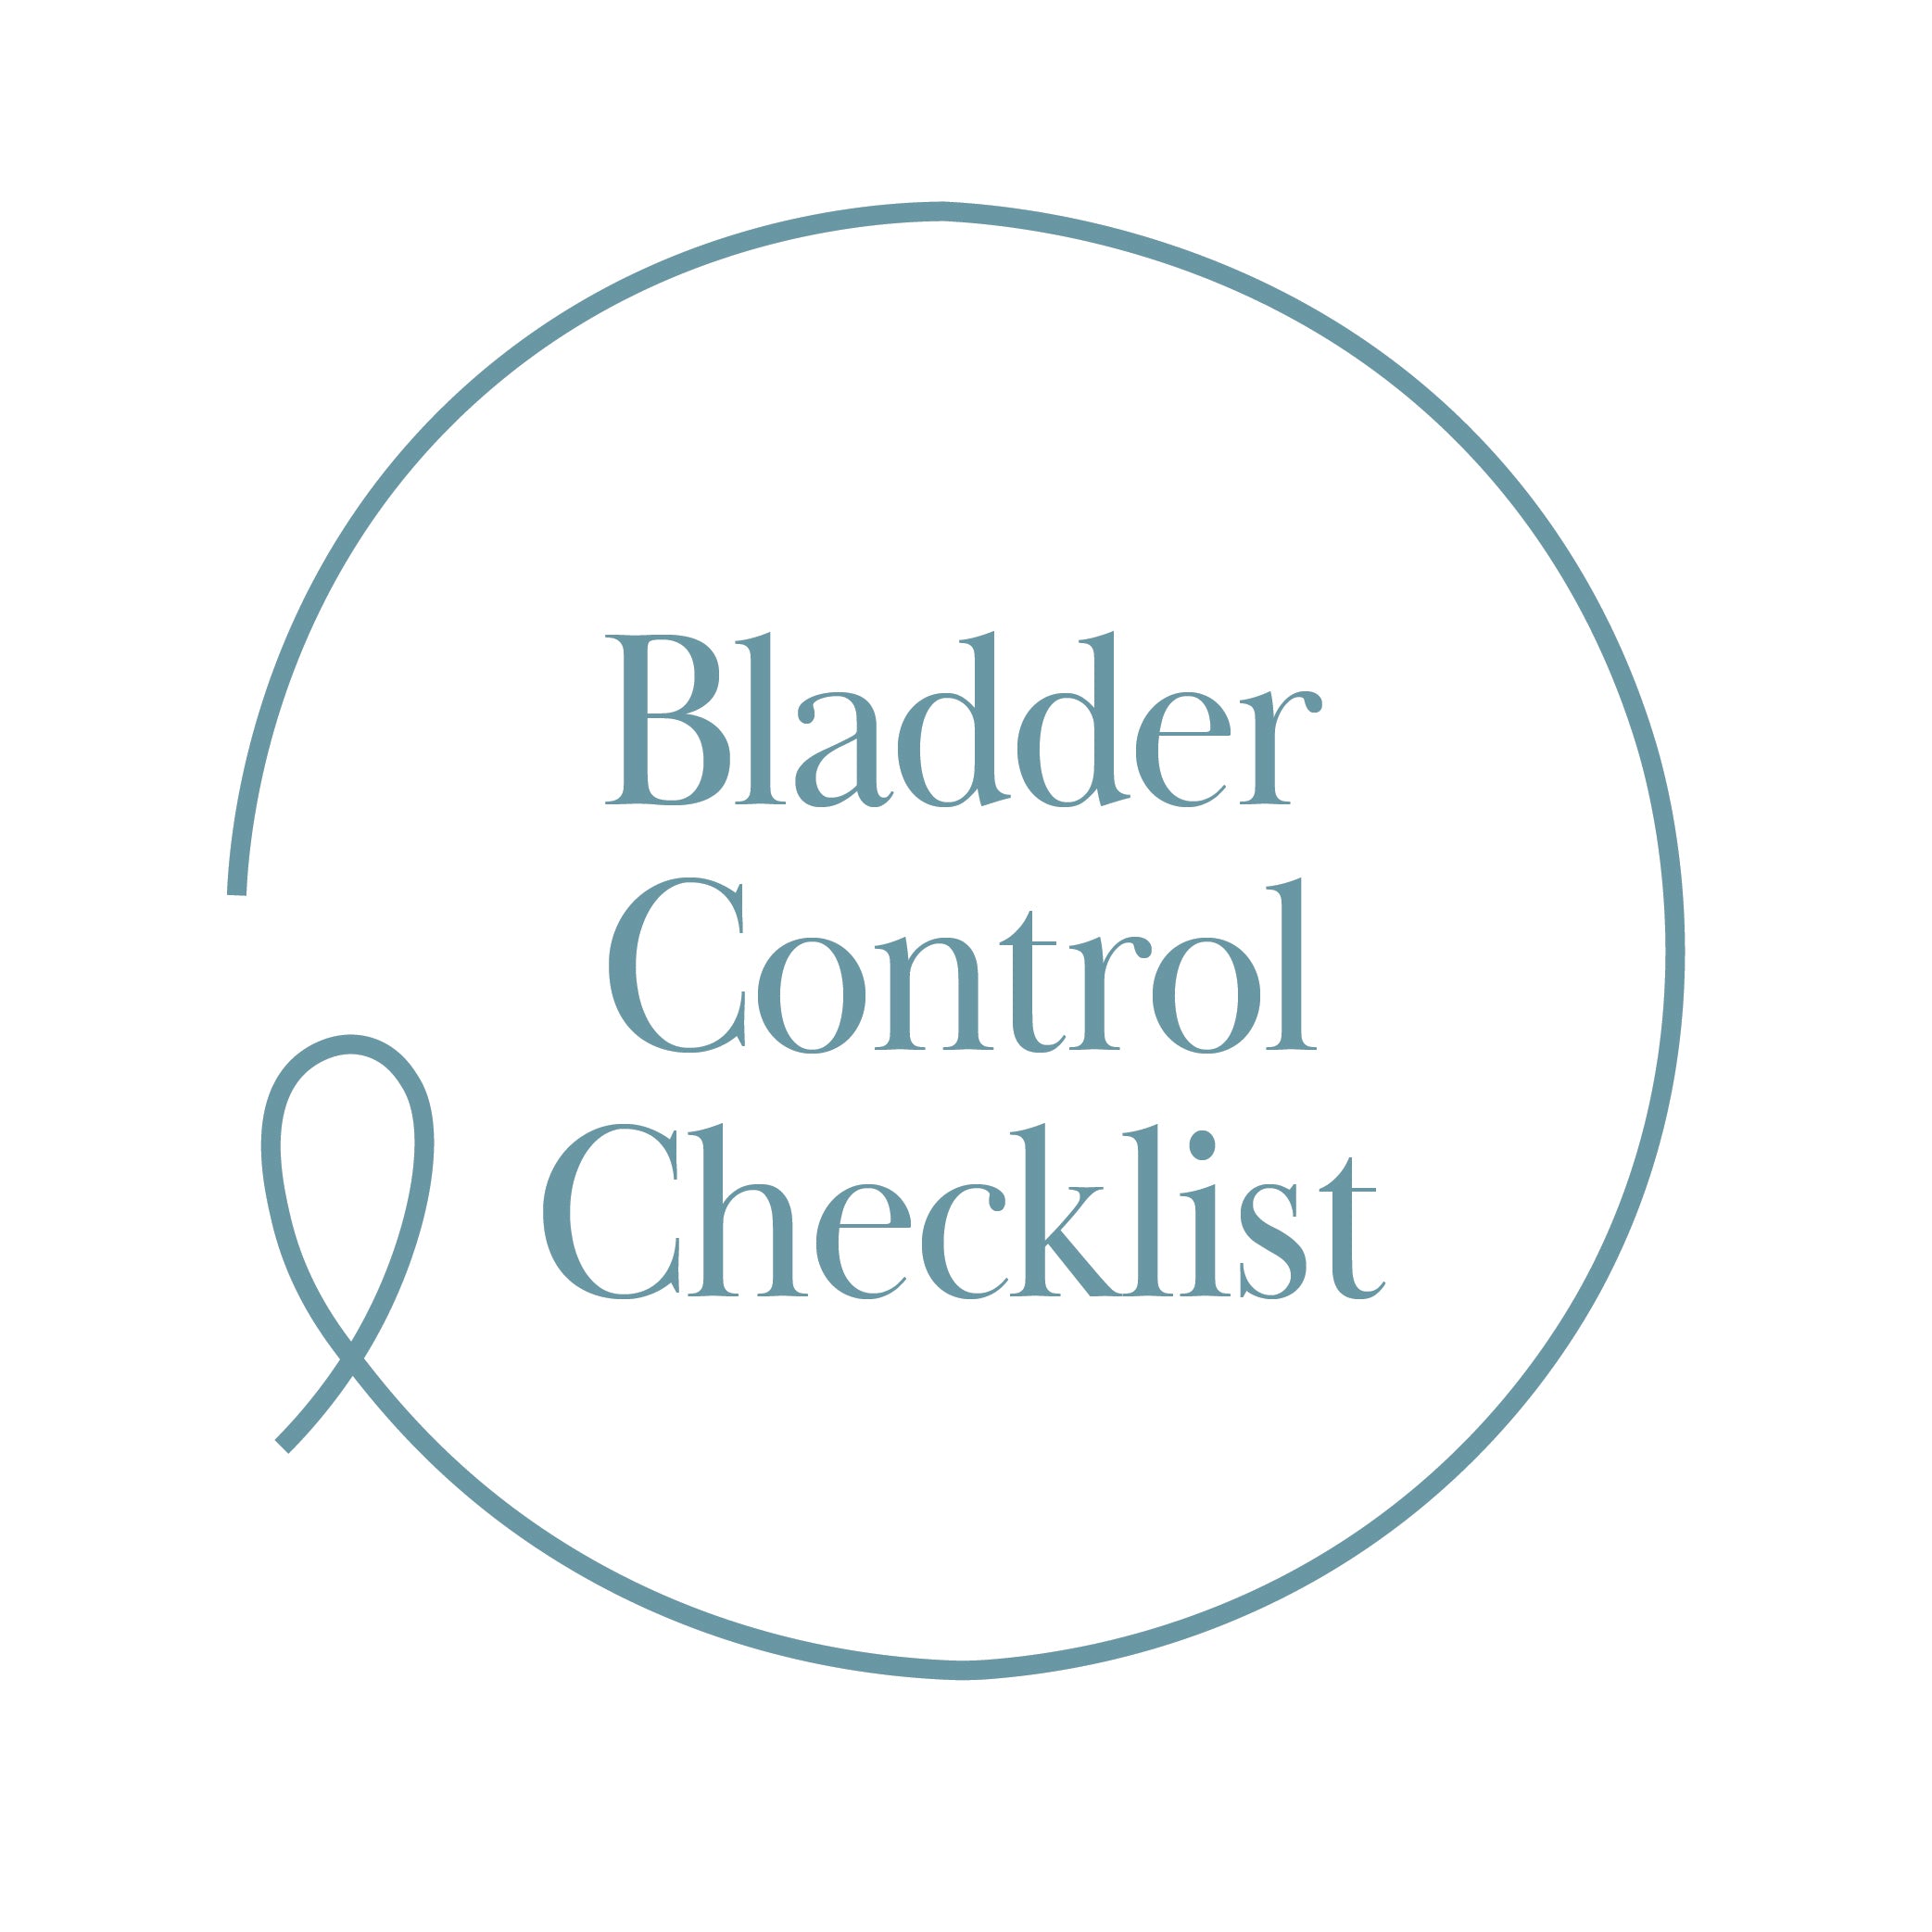 Bladder Control Checklist